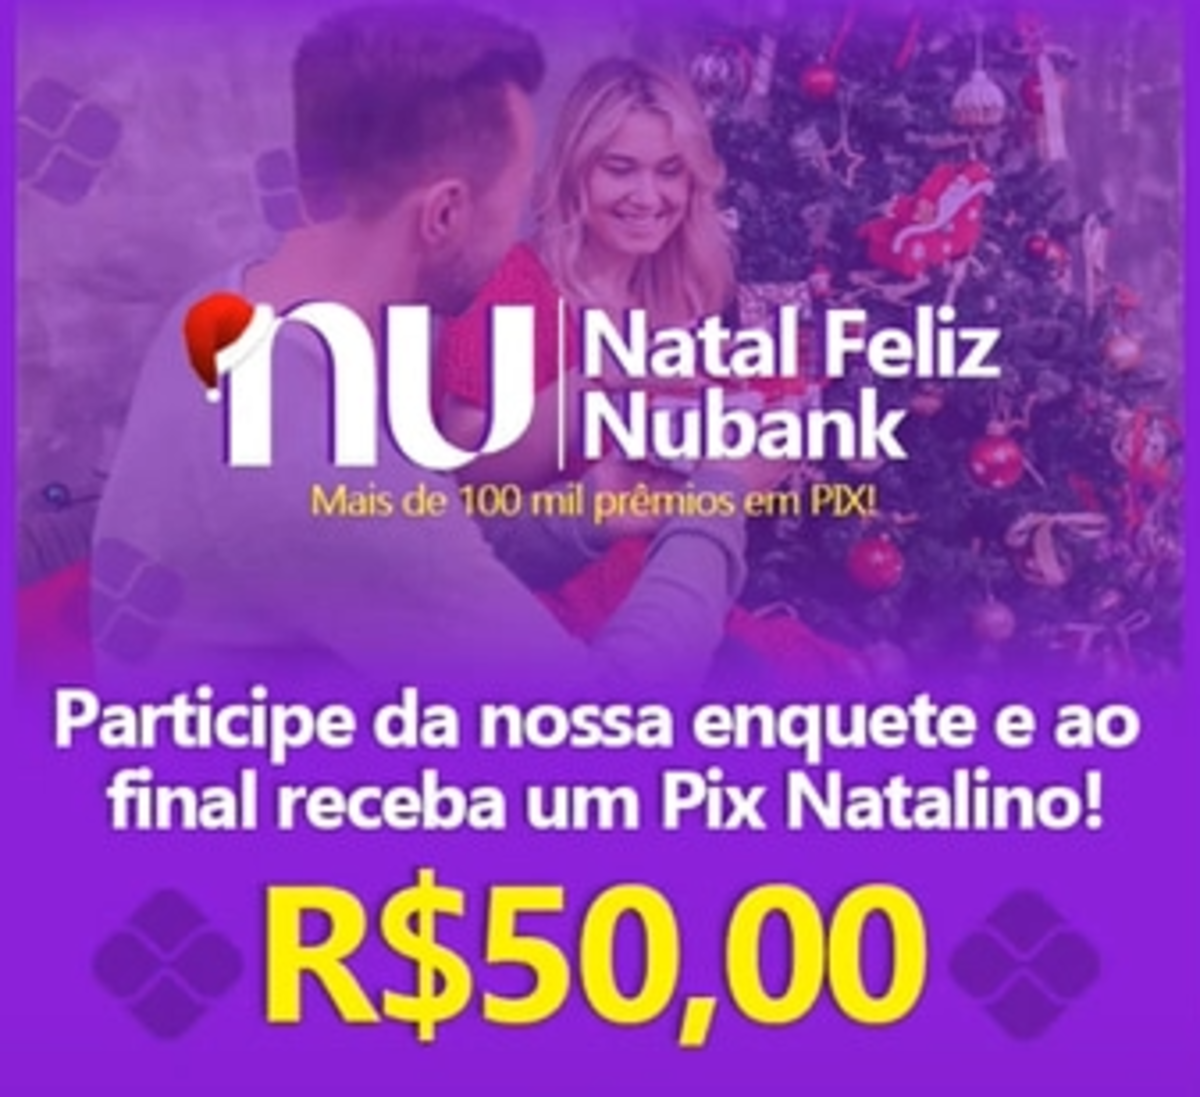 Pix Natalino do Nubank é golpe? Entenda a mensagem que vem circulando…